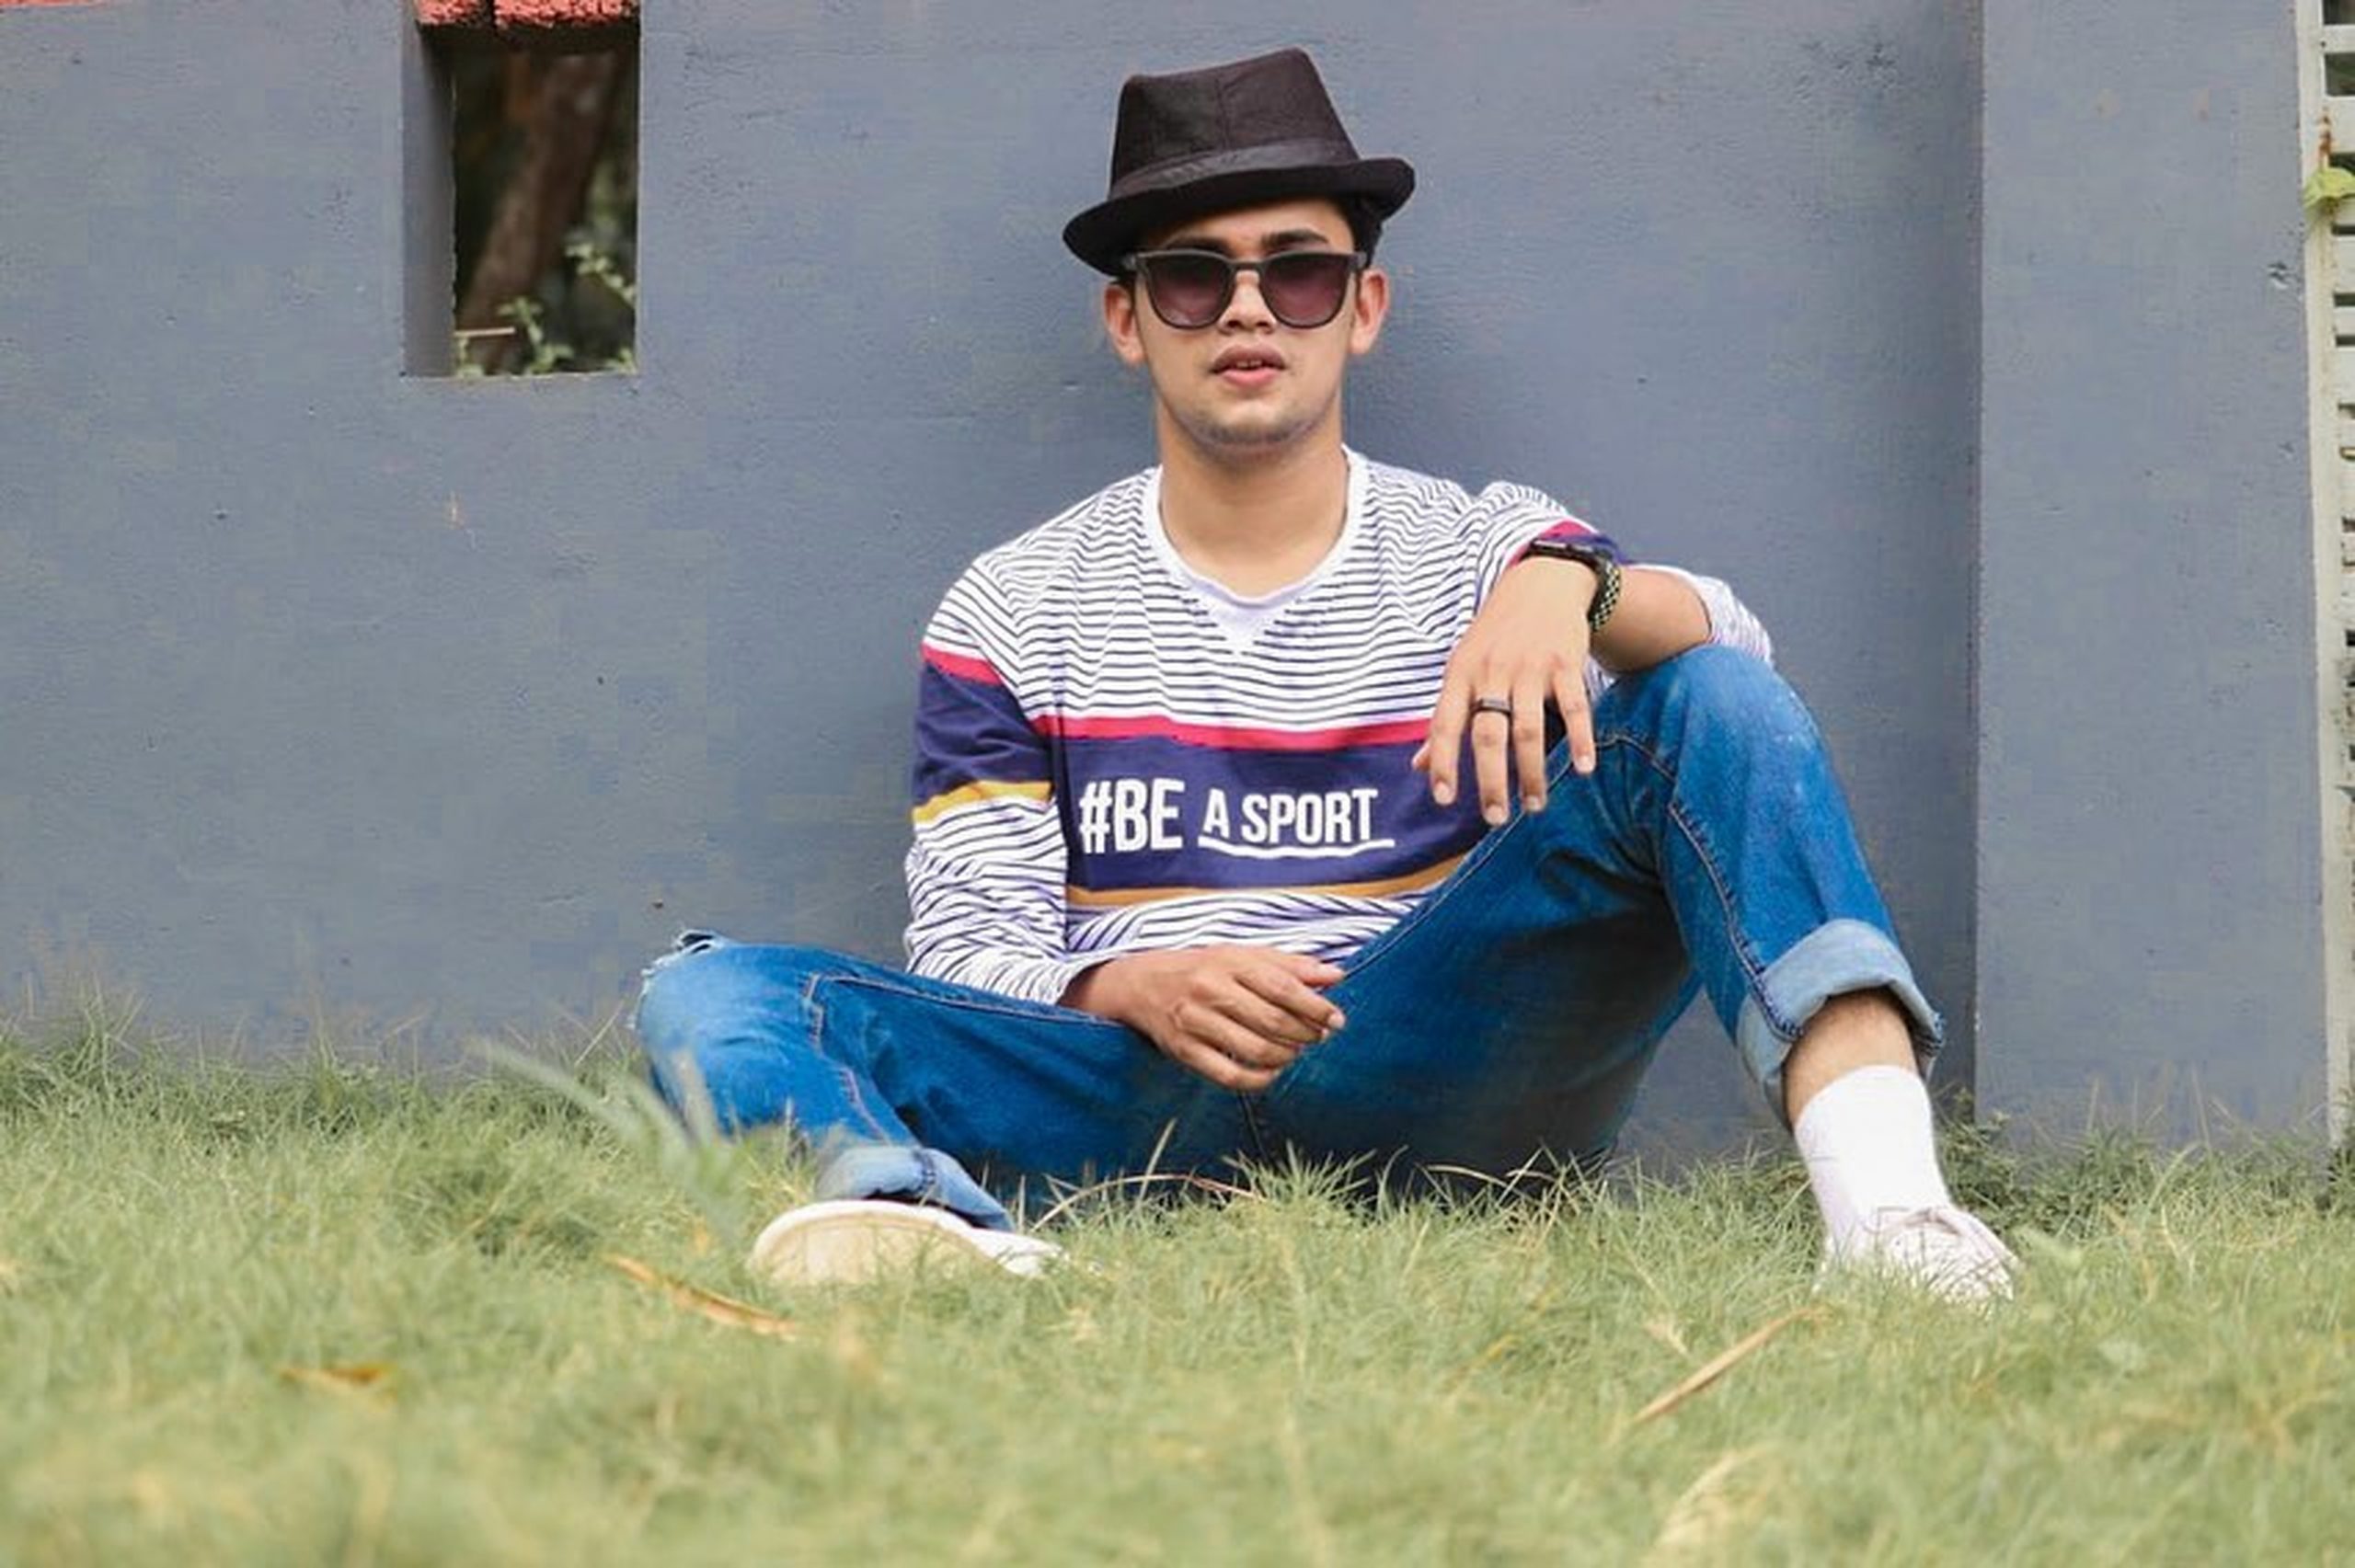 A stylish boy sitting on grass